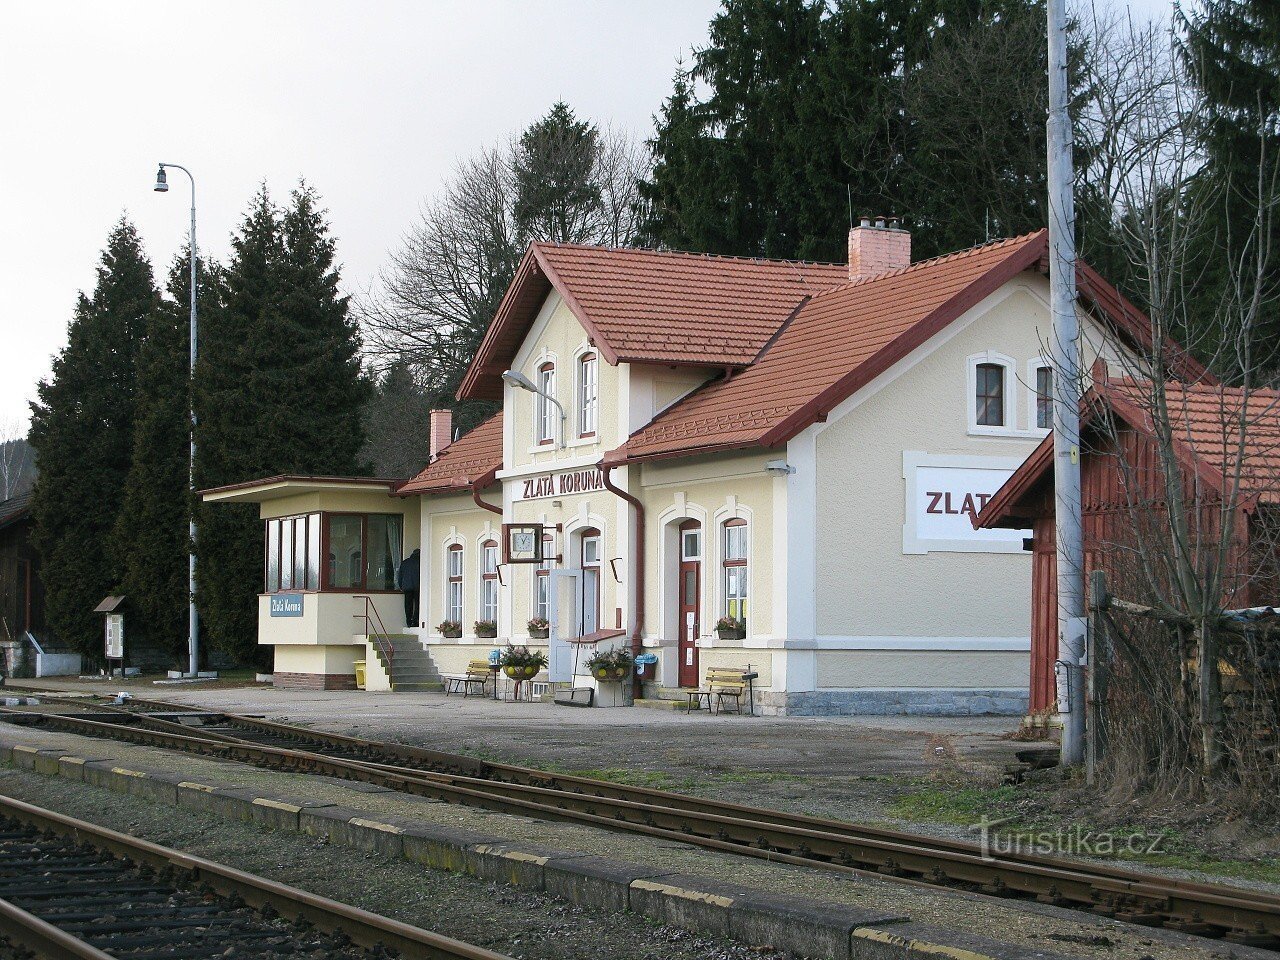 Zlatá-Koruna-Bahn - Ausgangspunkt der TZ zum Berg Kleť